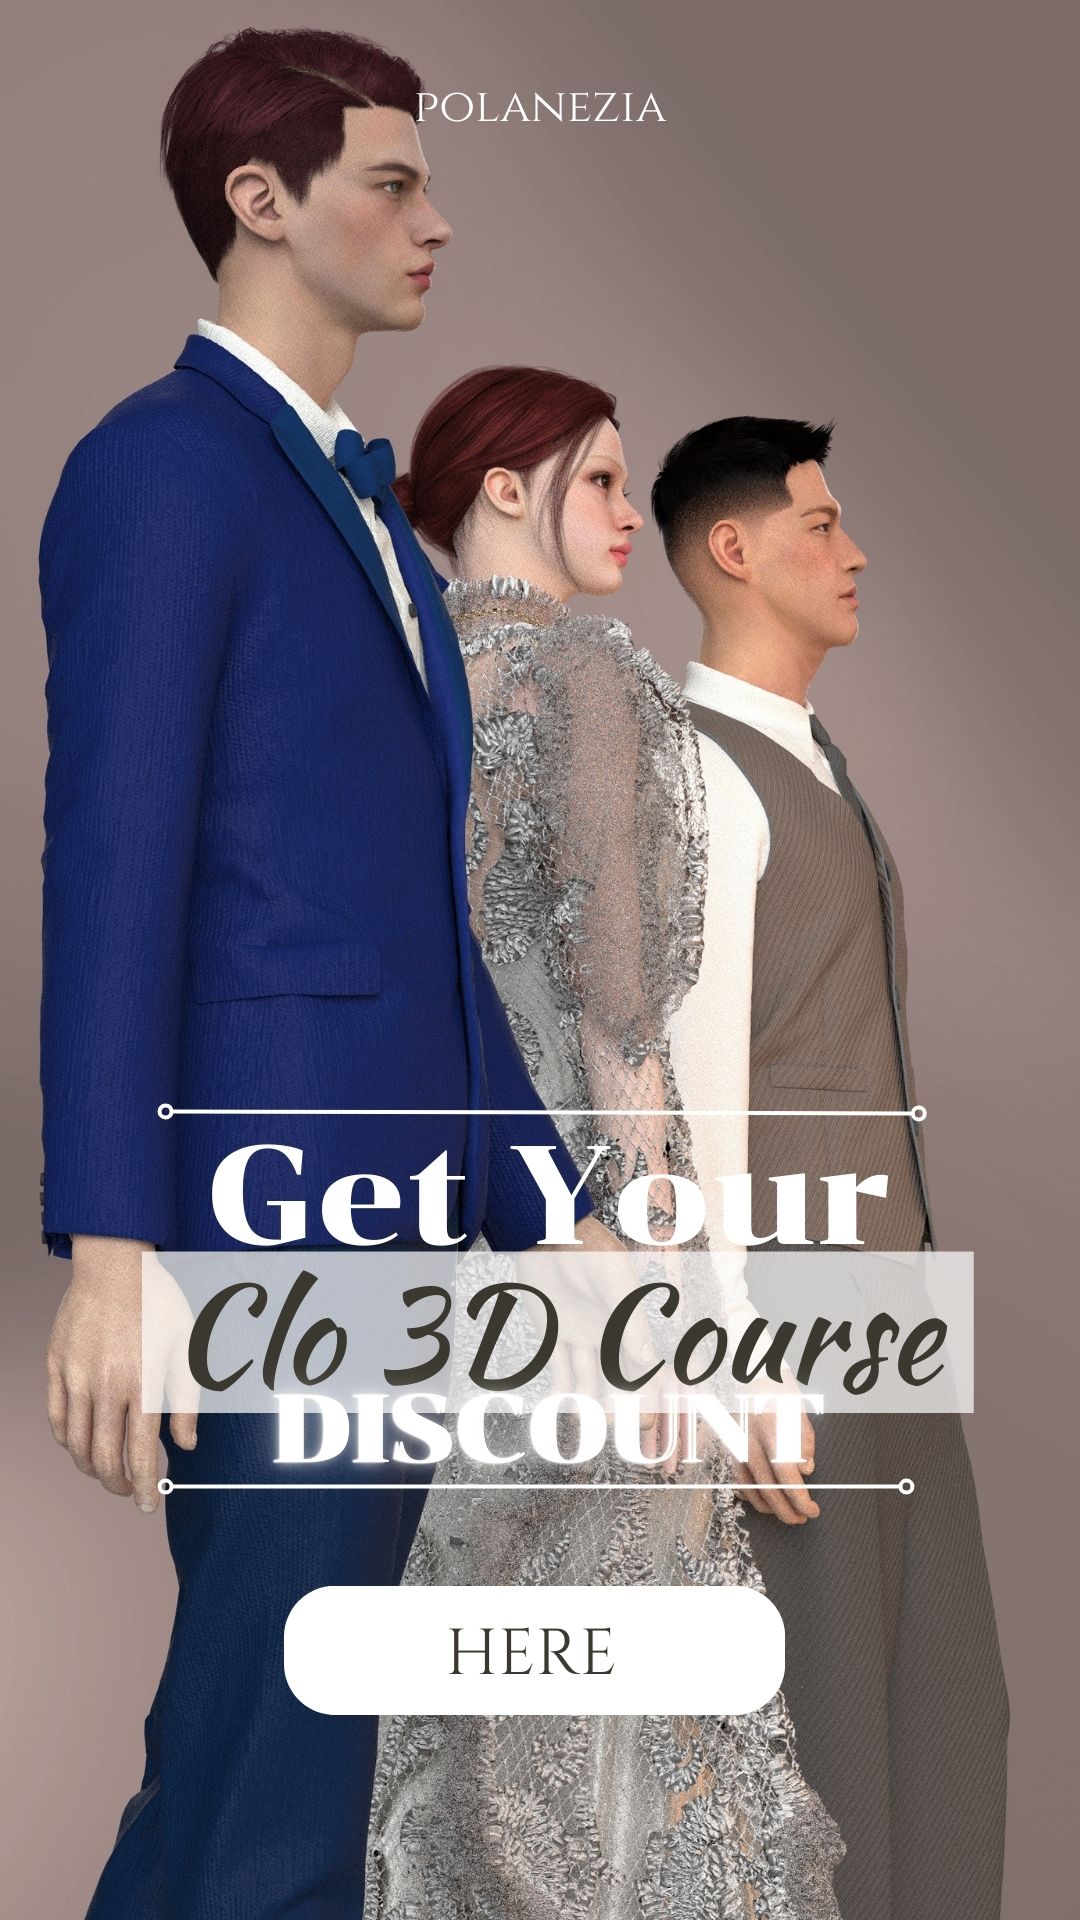 Clo 3D Course Coupon